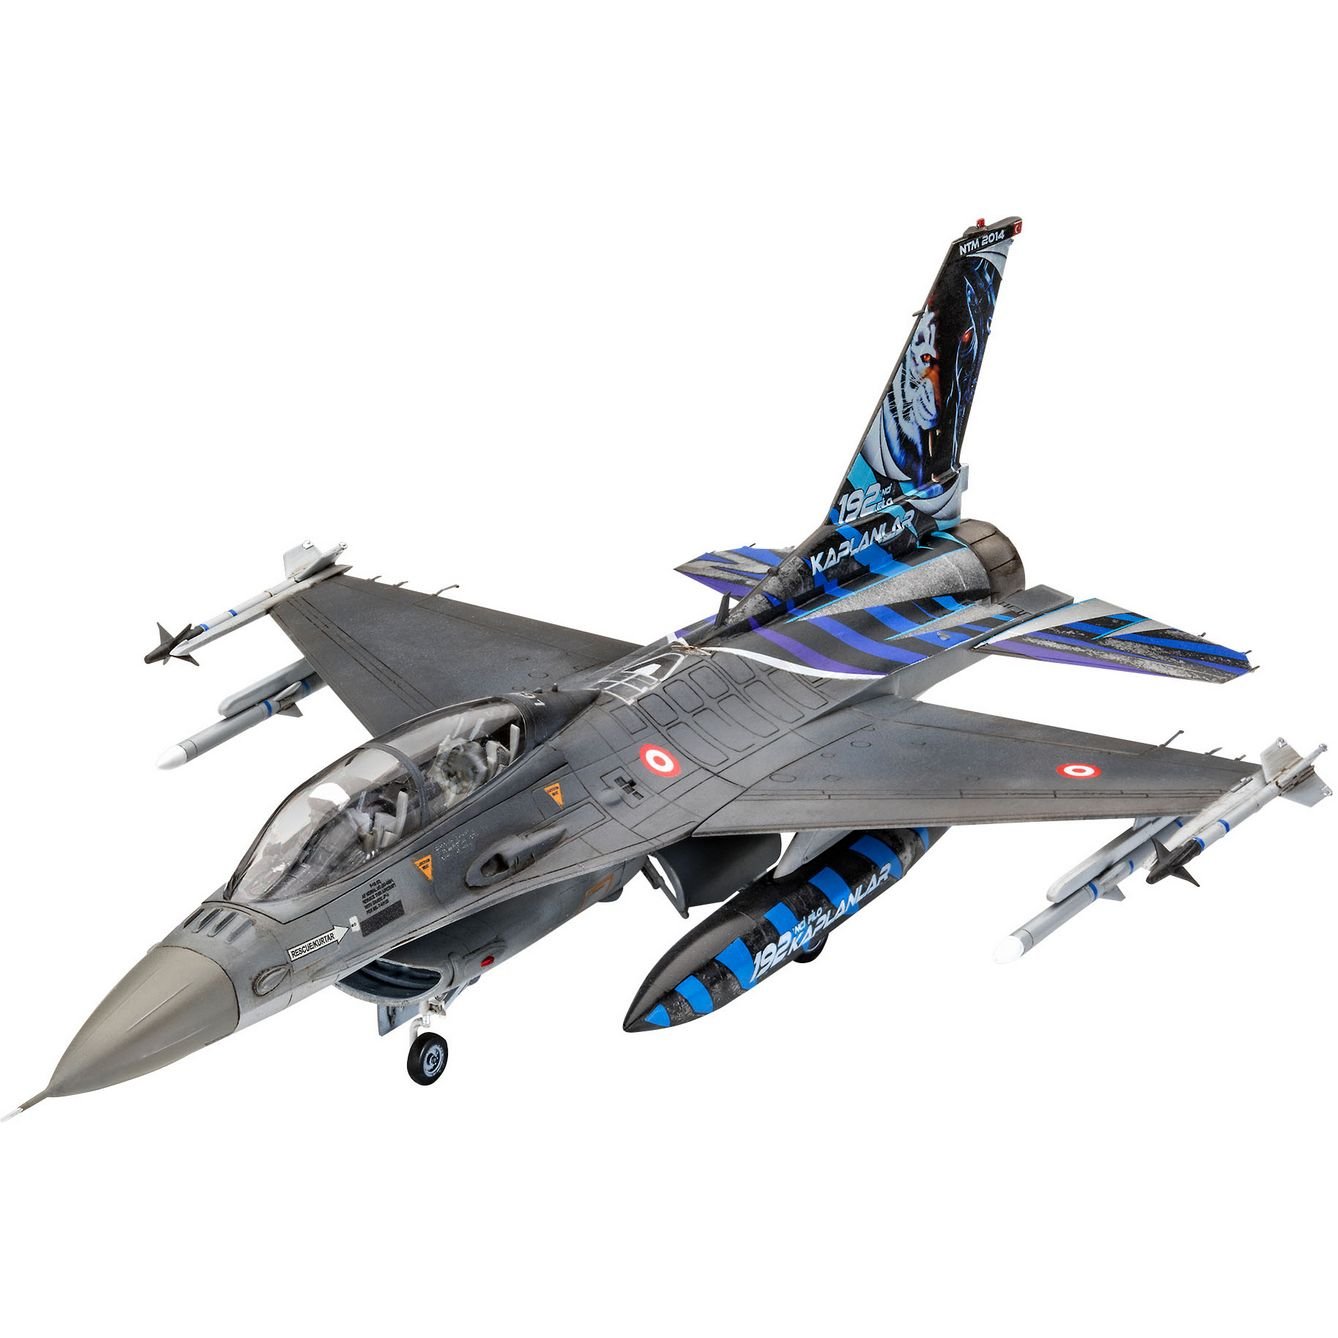 Сборная модель Revell Самолет F-16D Tigermeet 2014, уровень 4, масштаб 1:72, 130 деталей (RVL-03844) - фото 3